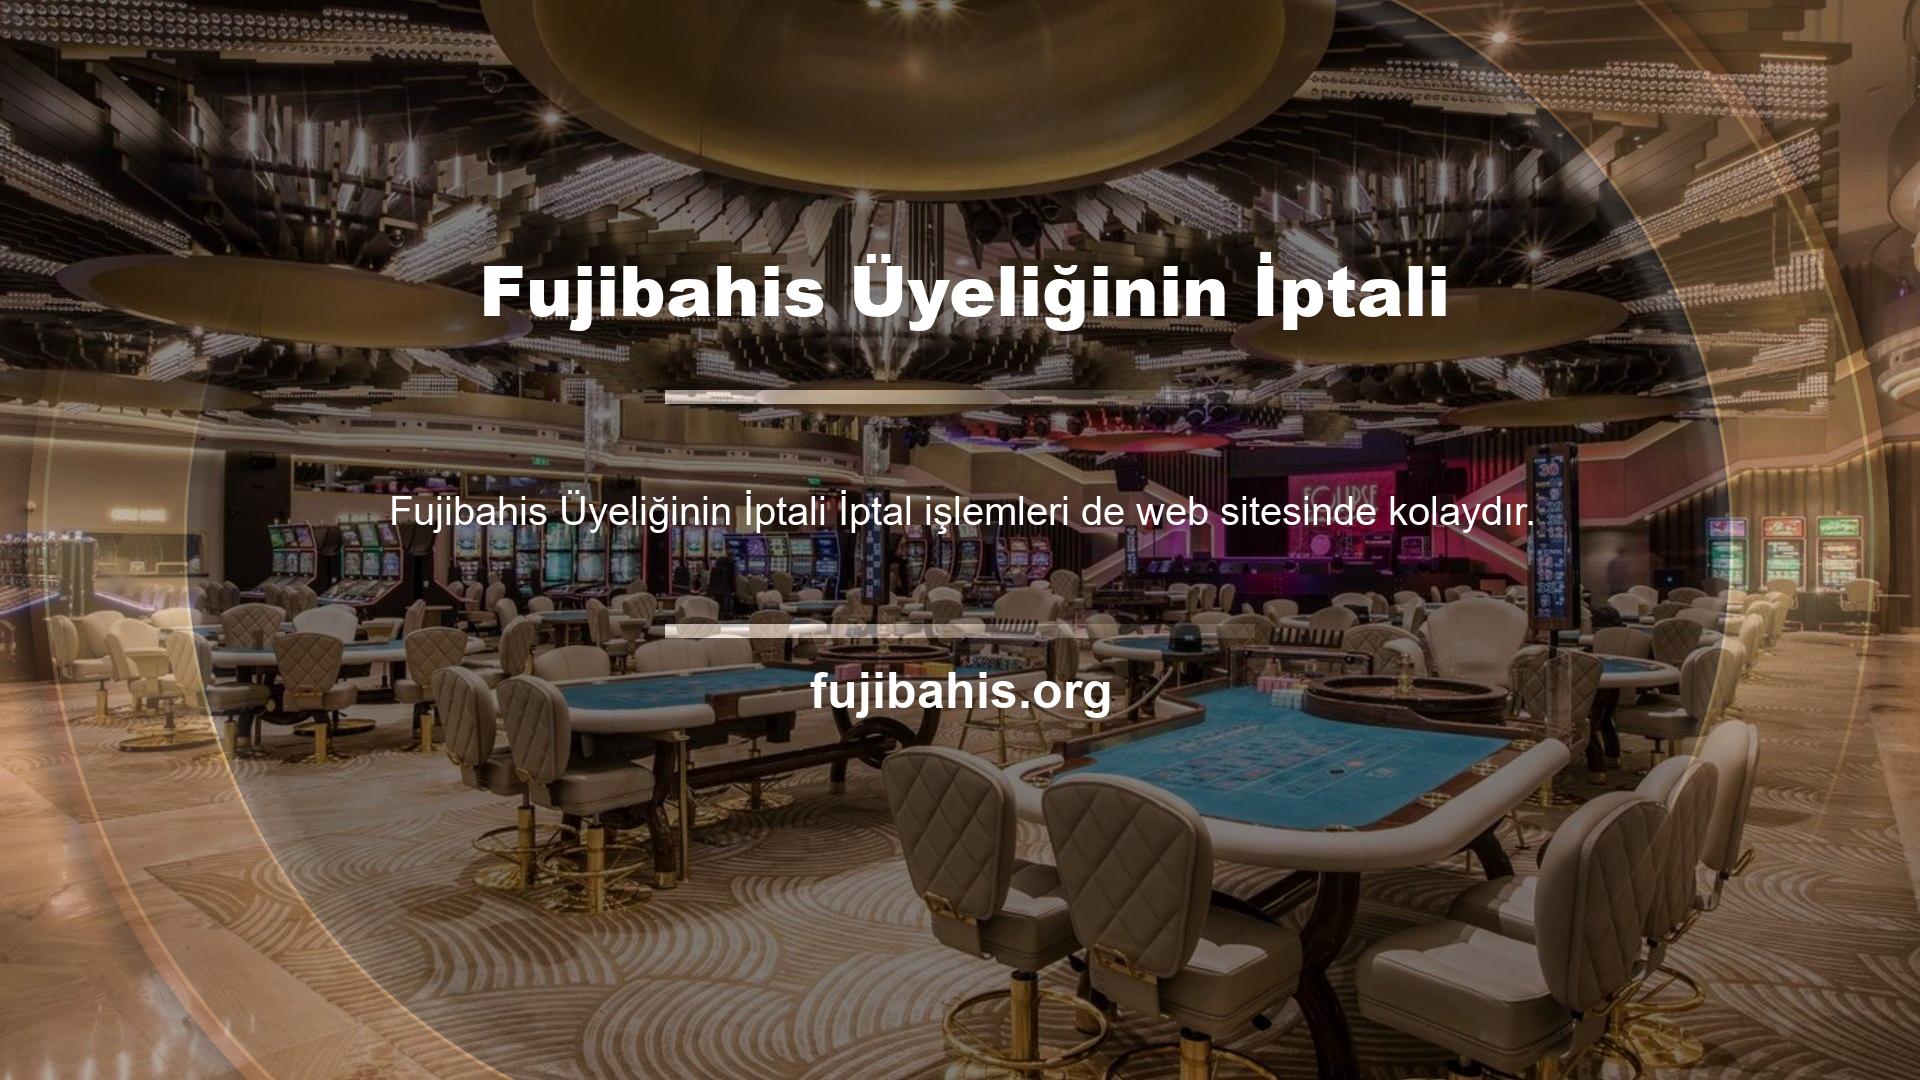 Fujibahis üyelik sonlandırma adımı için web sitesindeki Hesabım adımından üyeliğinizin iptal edilmesini talep etmeniz gerekmektedir